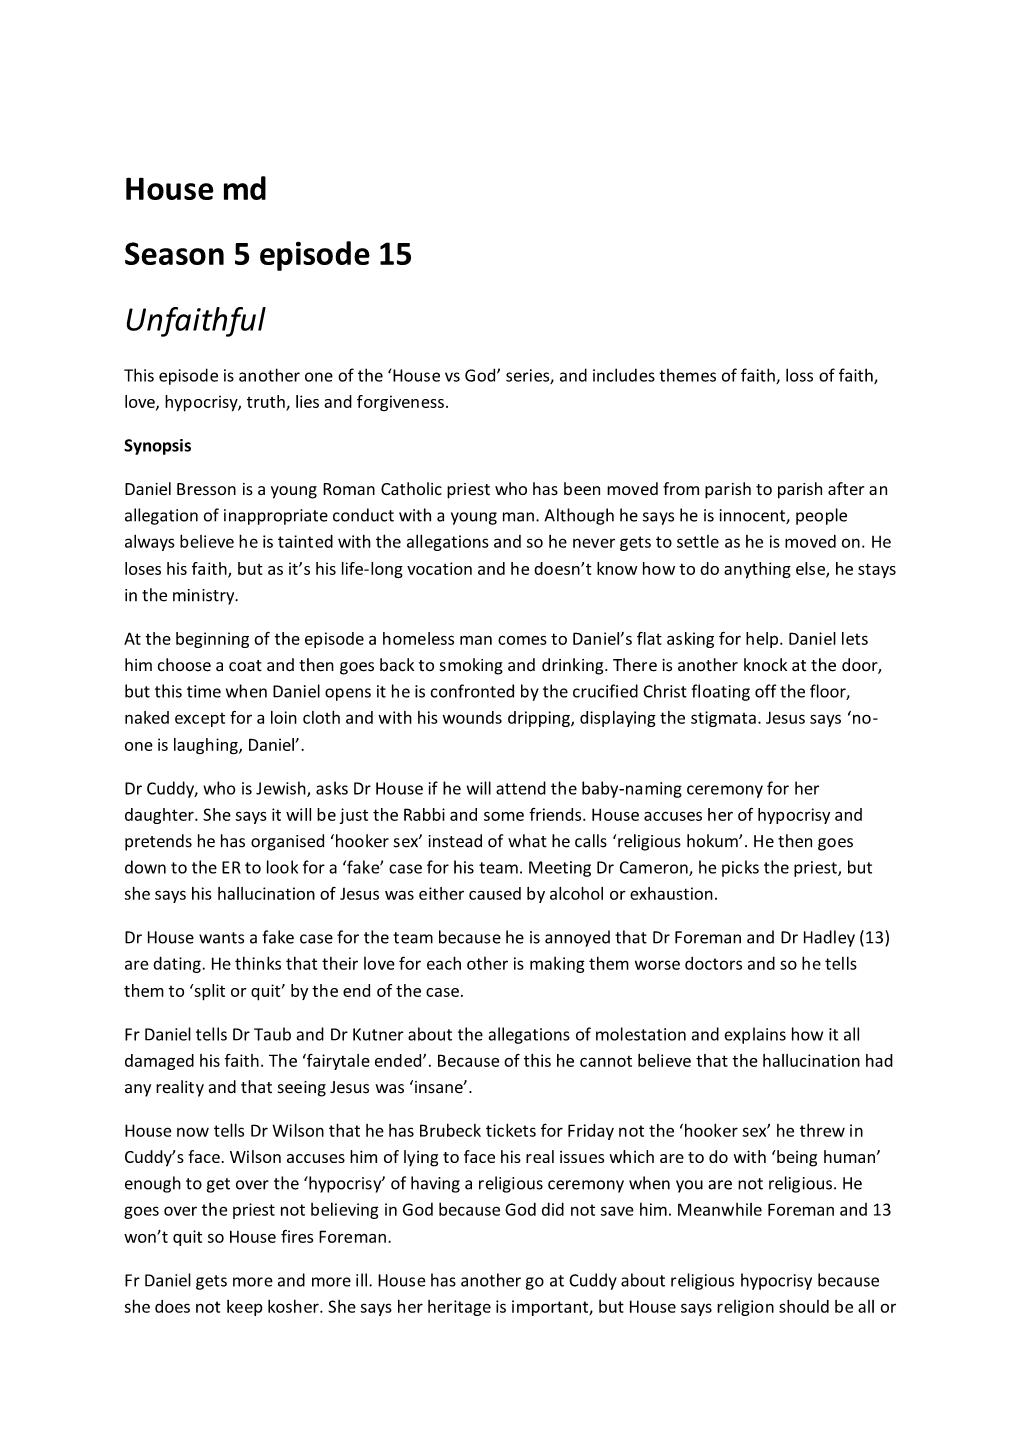 House Md Season 5 Episode 15 Unfaithful